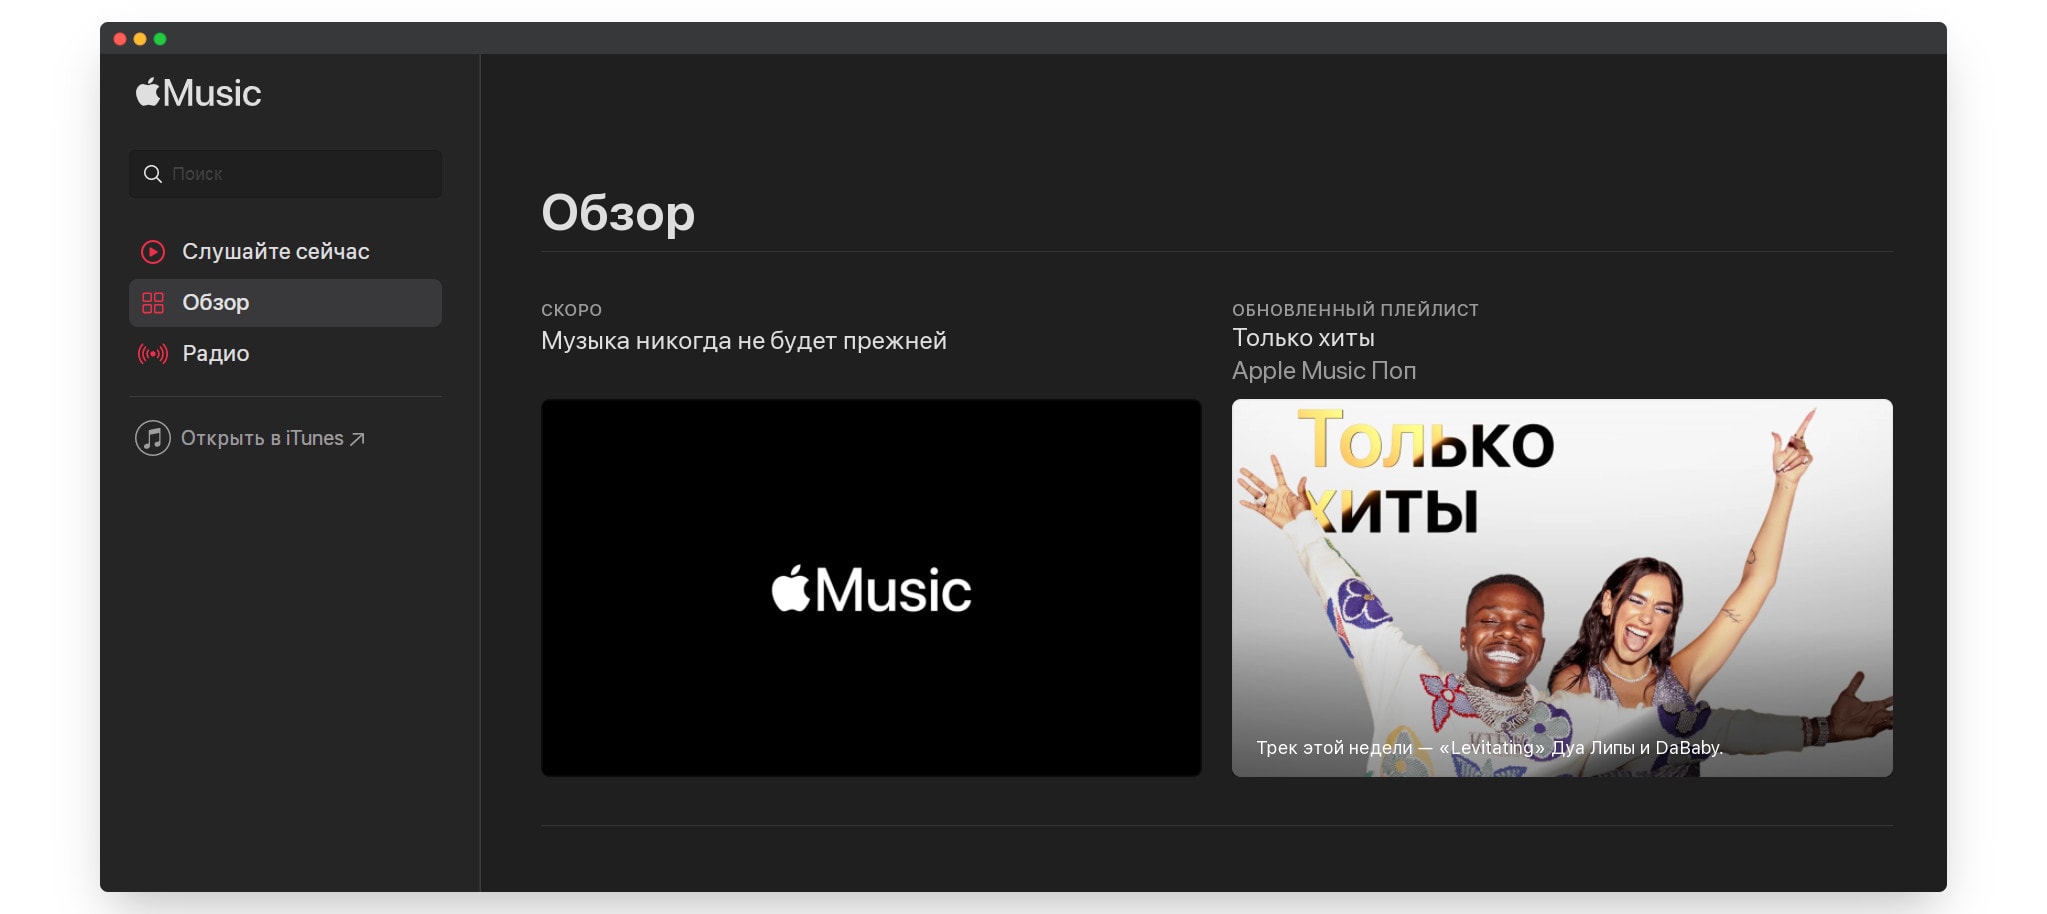 Слушать в Apple Music. Слушайте в Apple Music. Музыка для обзора. Как изменилась музыка